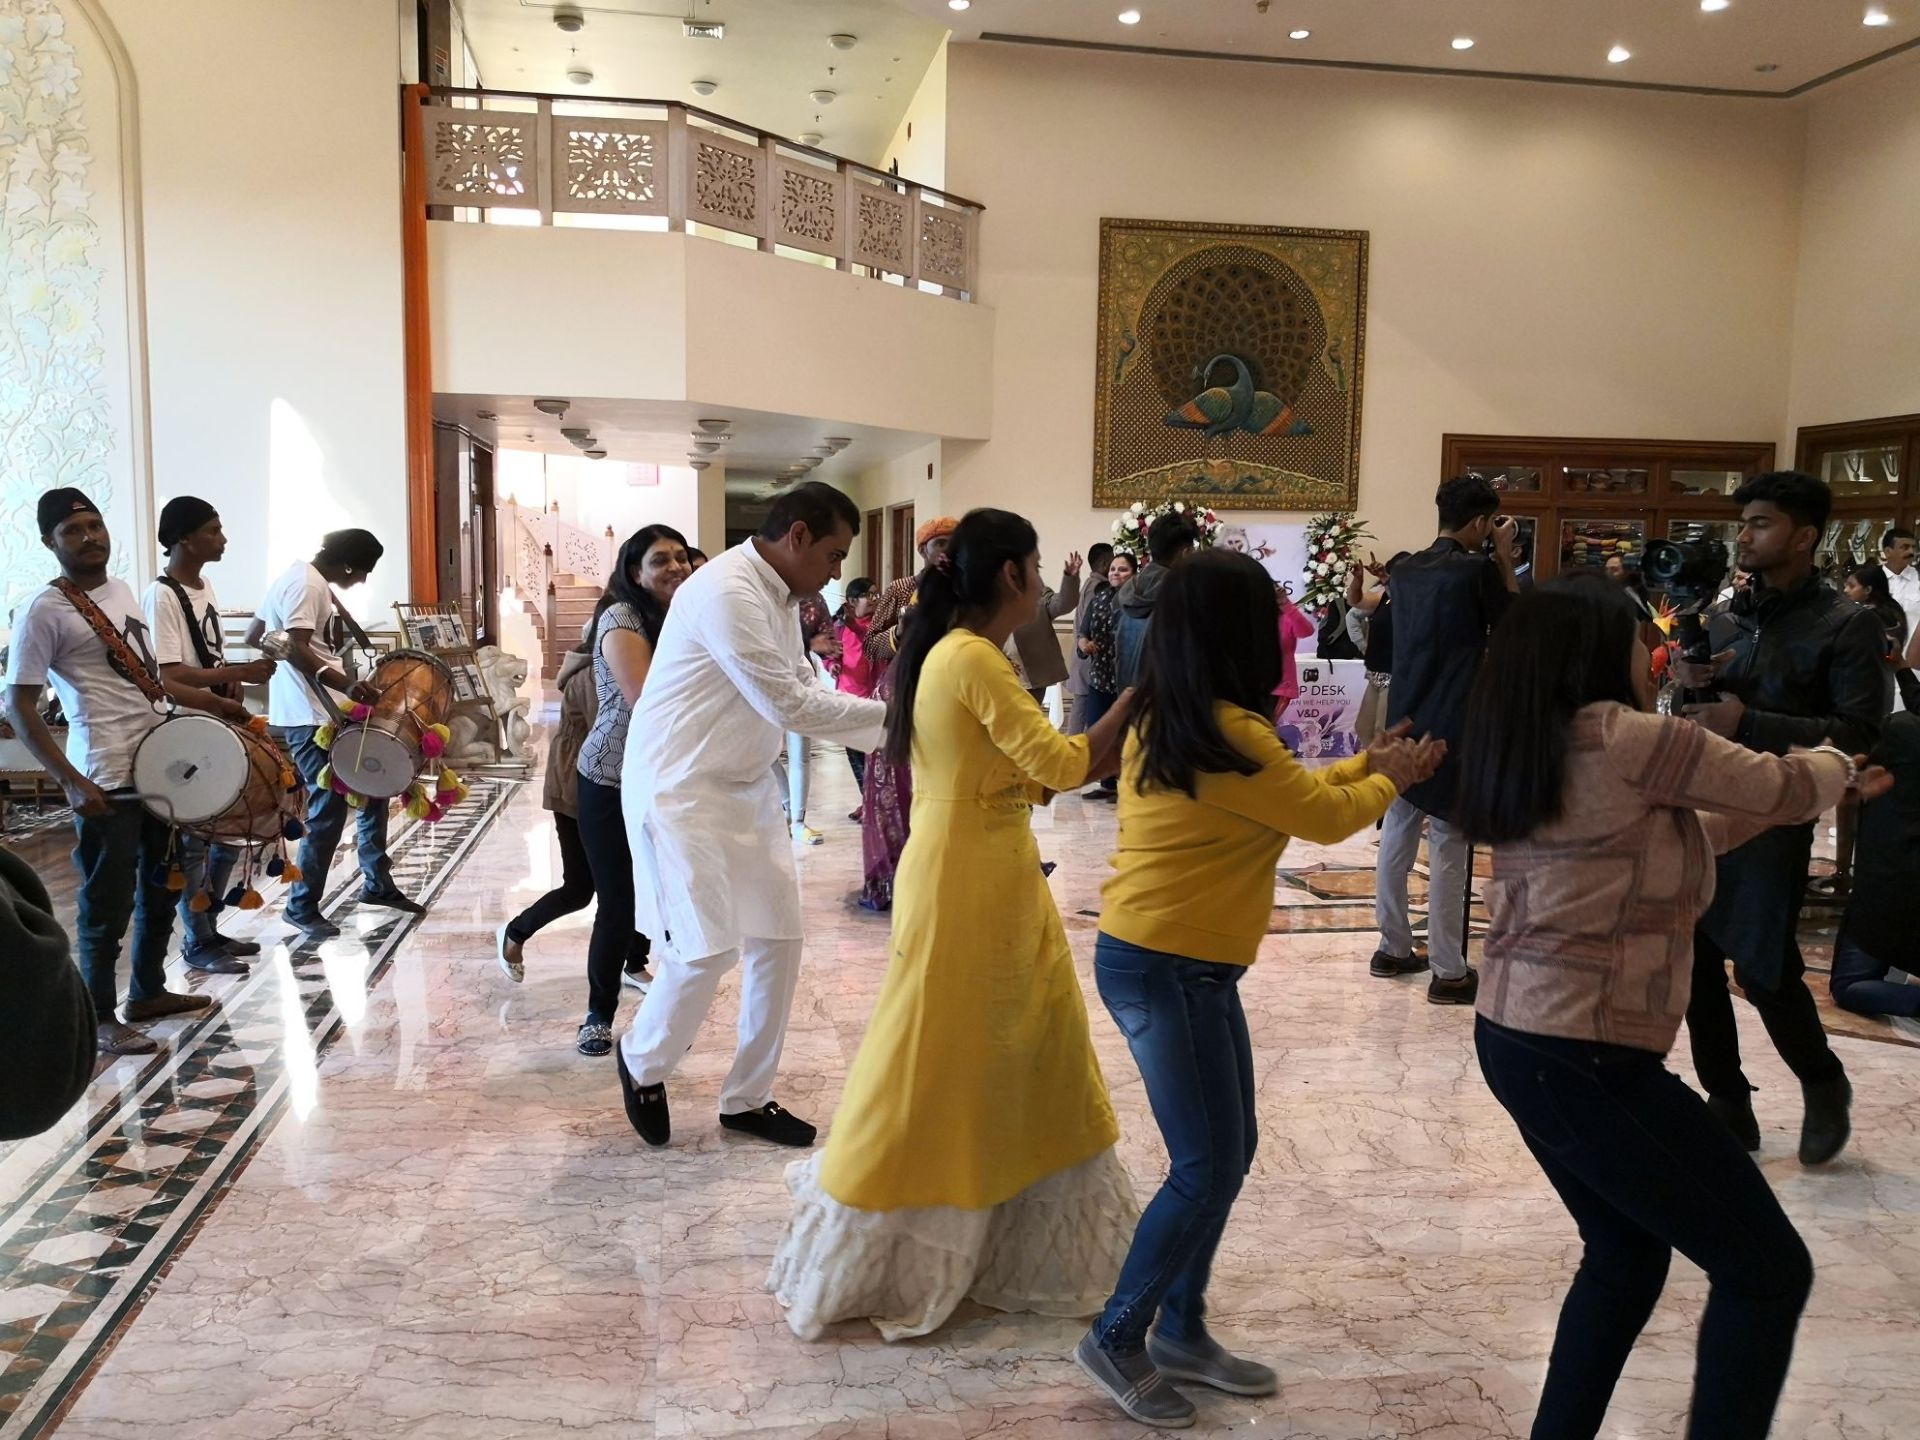 在酒店和去乌代布尔的路上，遇到了好几对迎亲的队伍，都在举行结婚仪式，应该是个好日子，在印度结婚是由女